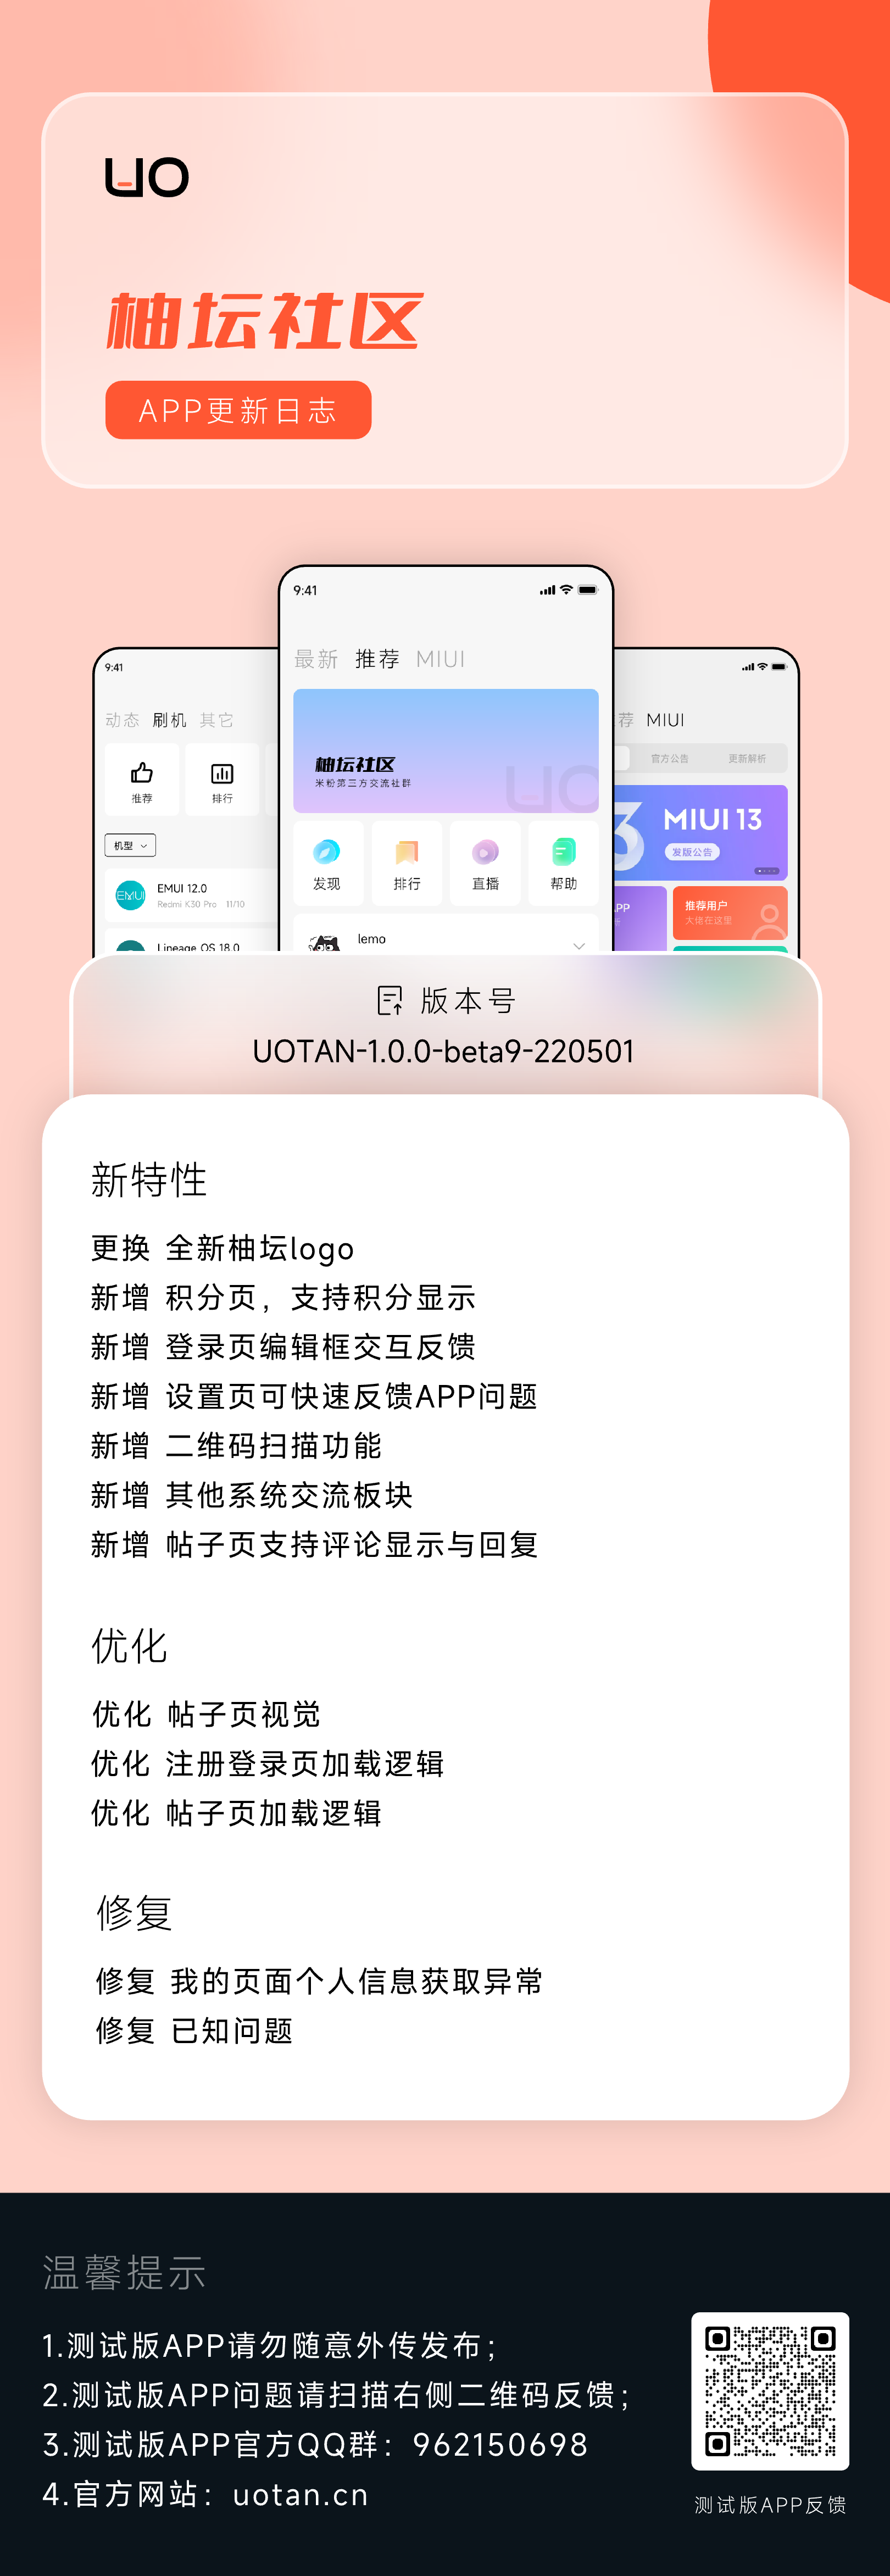 APP更新日志UOTAN-1.0.0-beta9-220501.png